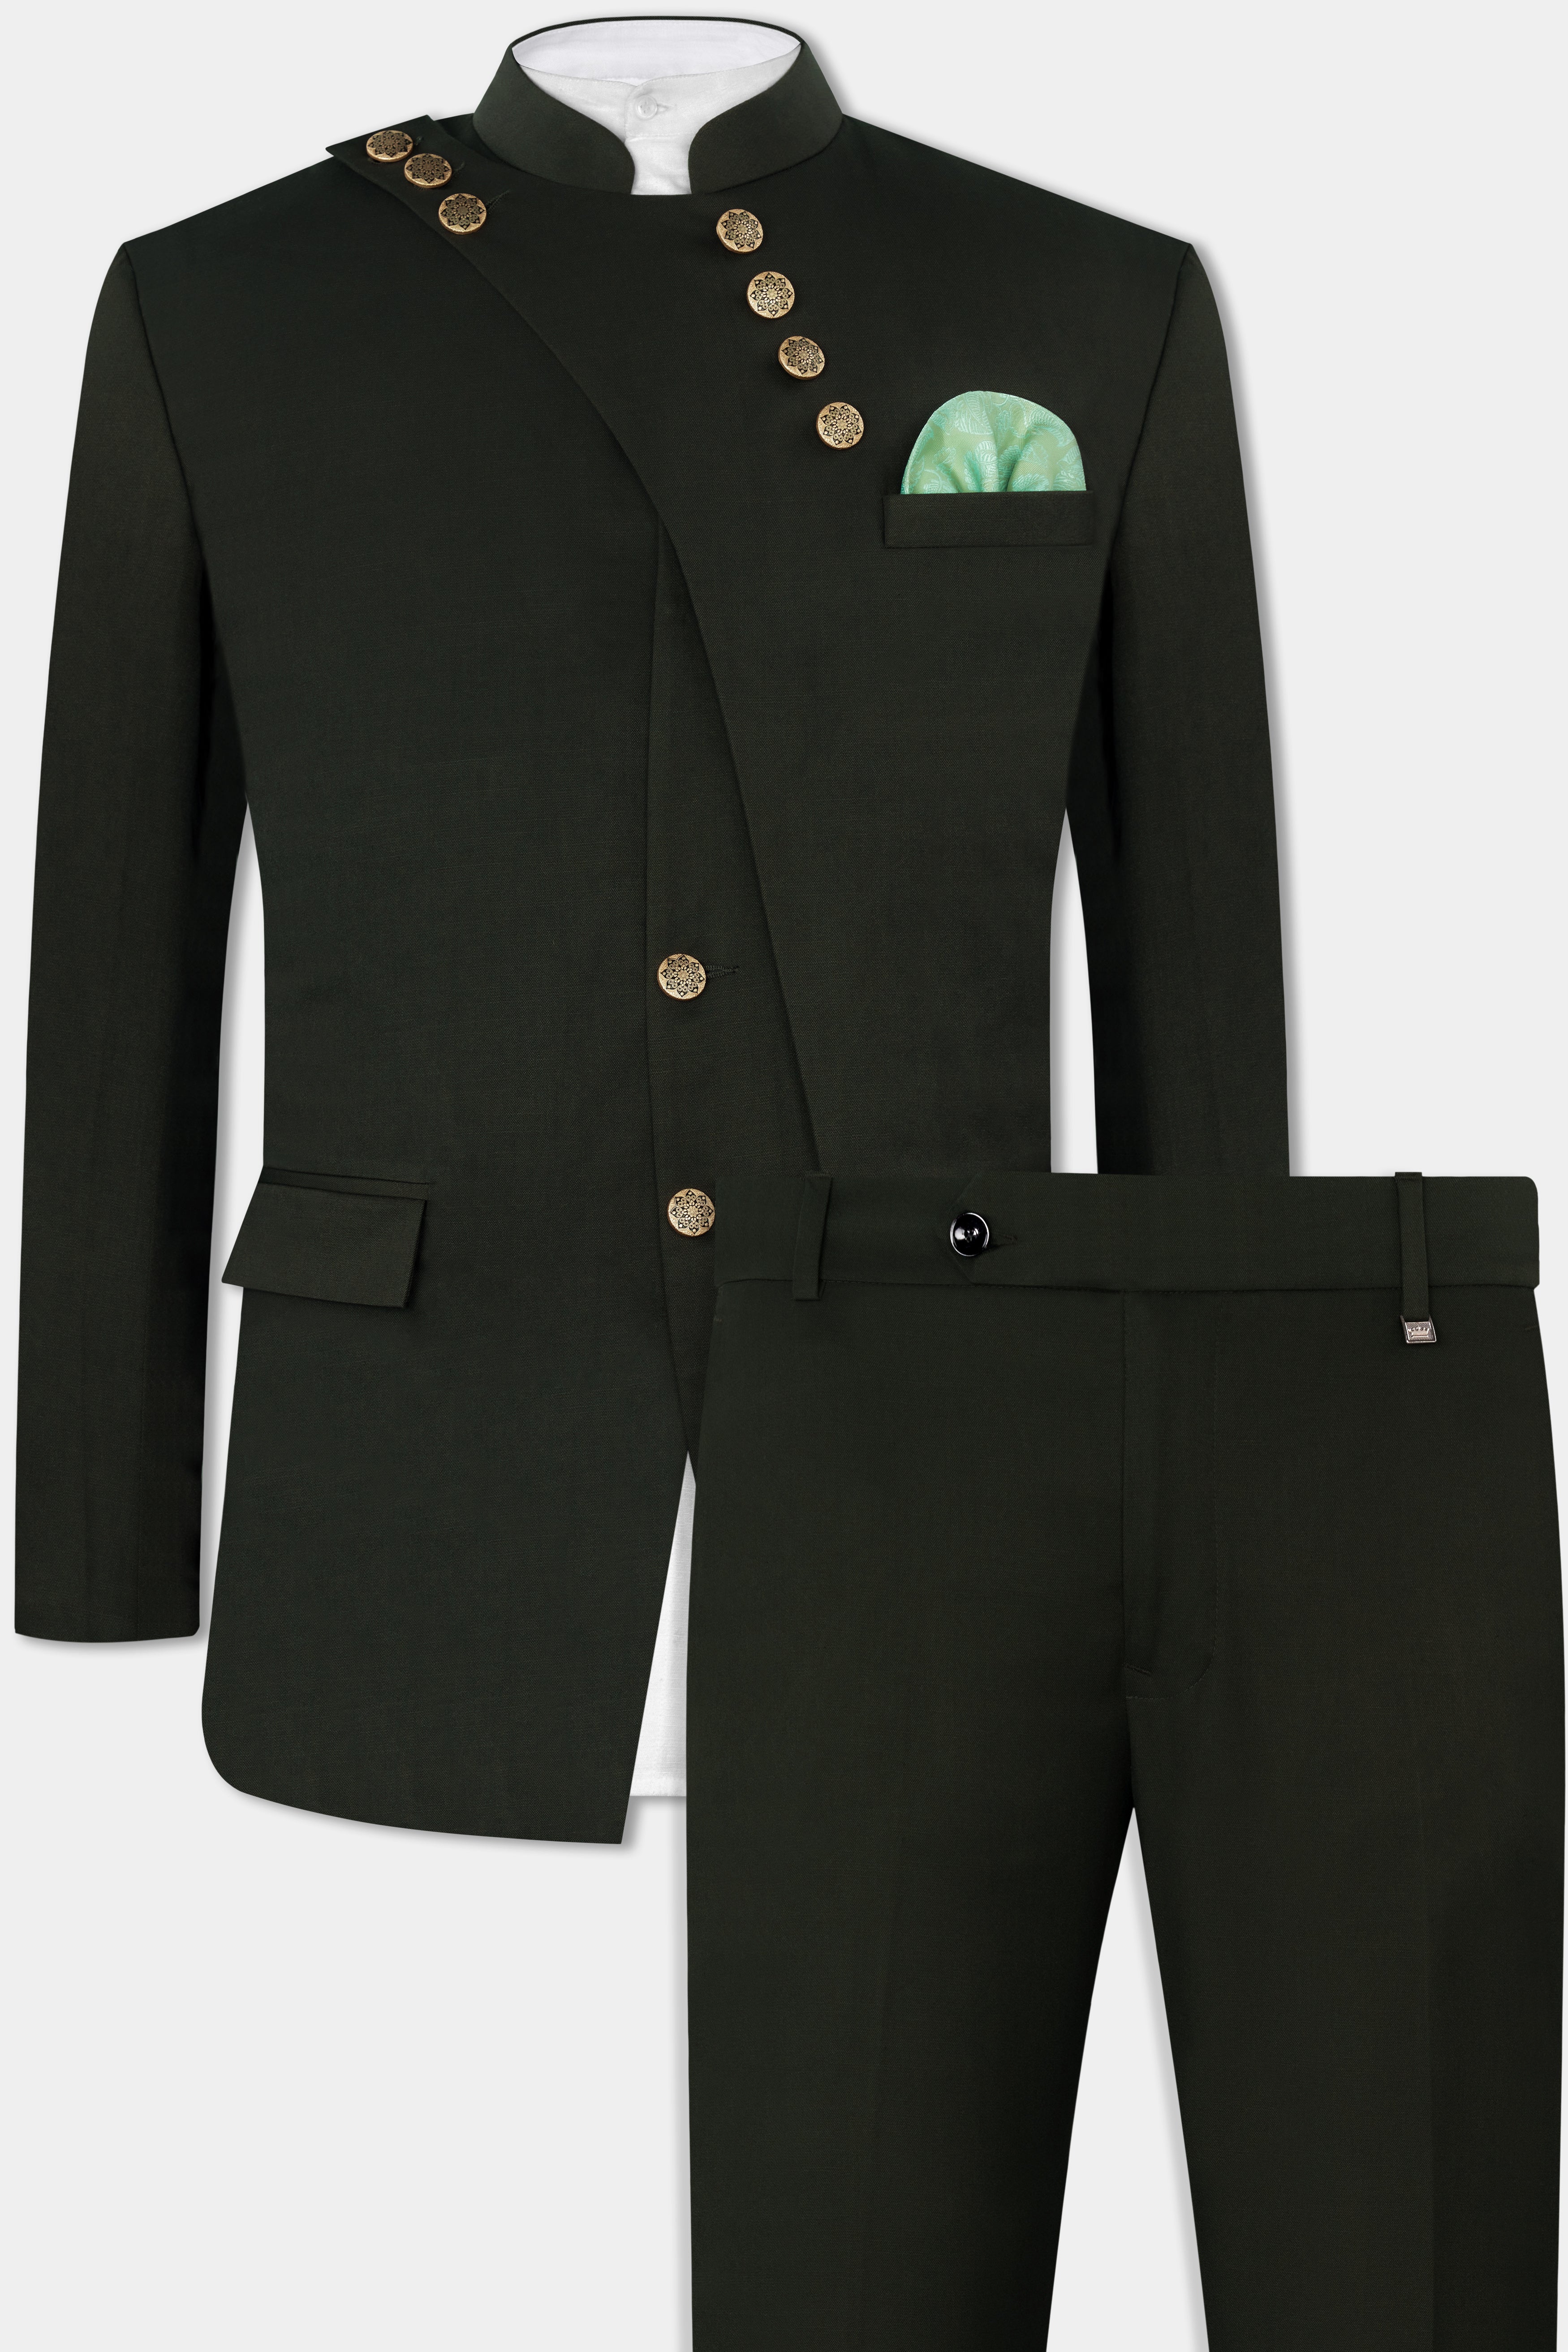 Rangoon Green Wool Rich Bandhgala Designer Suit ST2807-D1-36,ST2807-D1-38,ST2807-D1-40,ST2807-D1-42,ST2807-D1-44,ST2807-D1-46,ST2807-D1-48,ST2807-D1-50,ST2807-D1-52,ST2807-D1-54,ST2807-D1-56,ST2807-D1-58,ST2807-D1-60